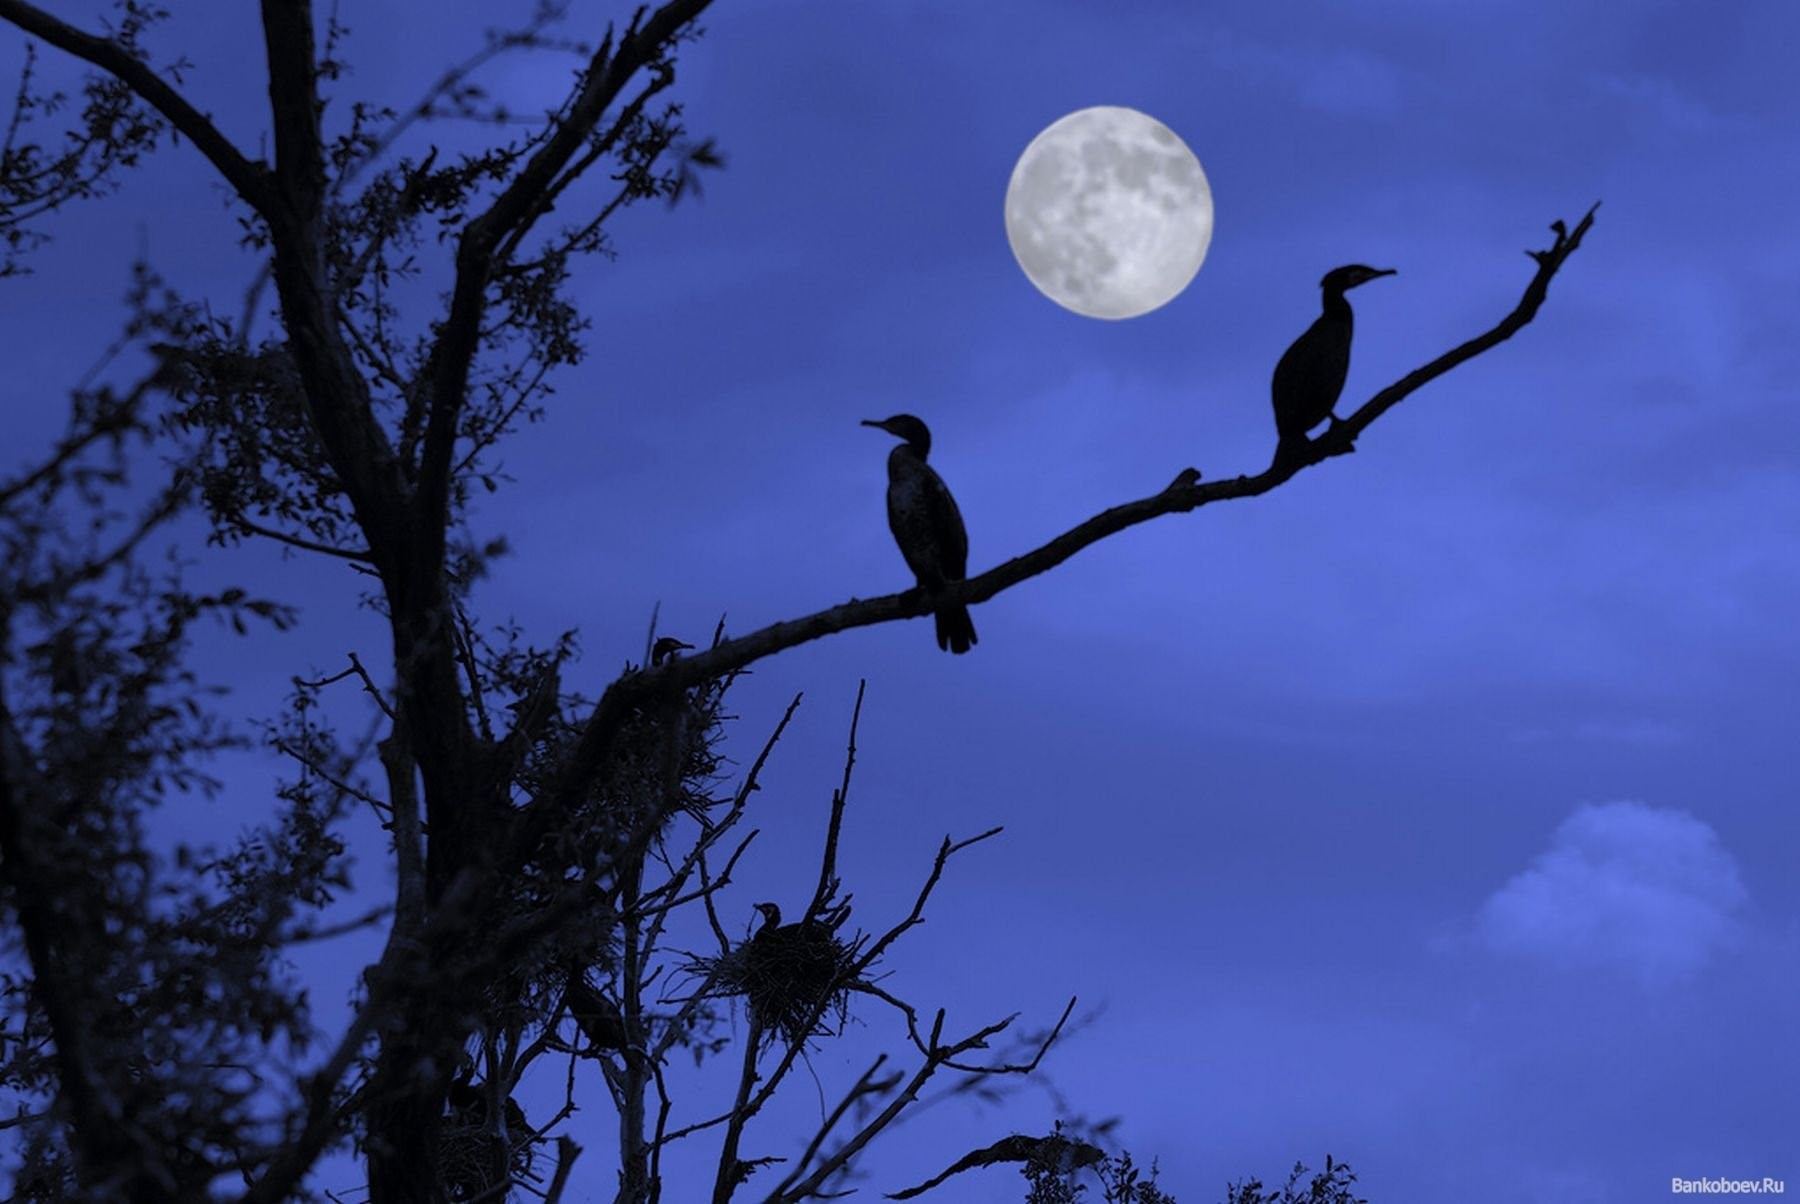 Midnight bird. Ночные птицы. Птица в ночном небе. Птицы в лесу ночью. Луна и птицы.